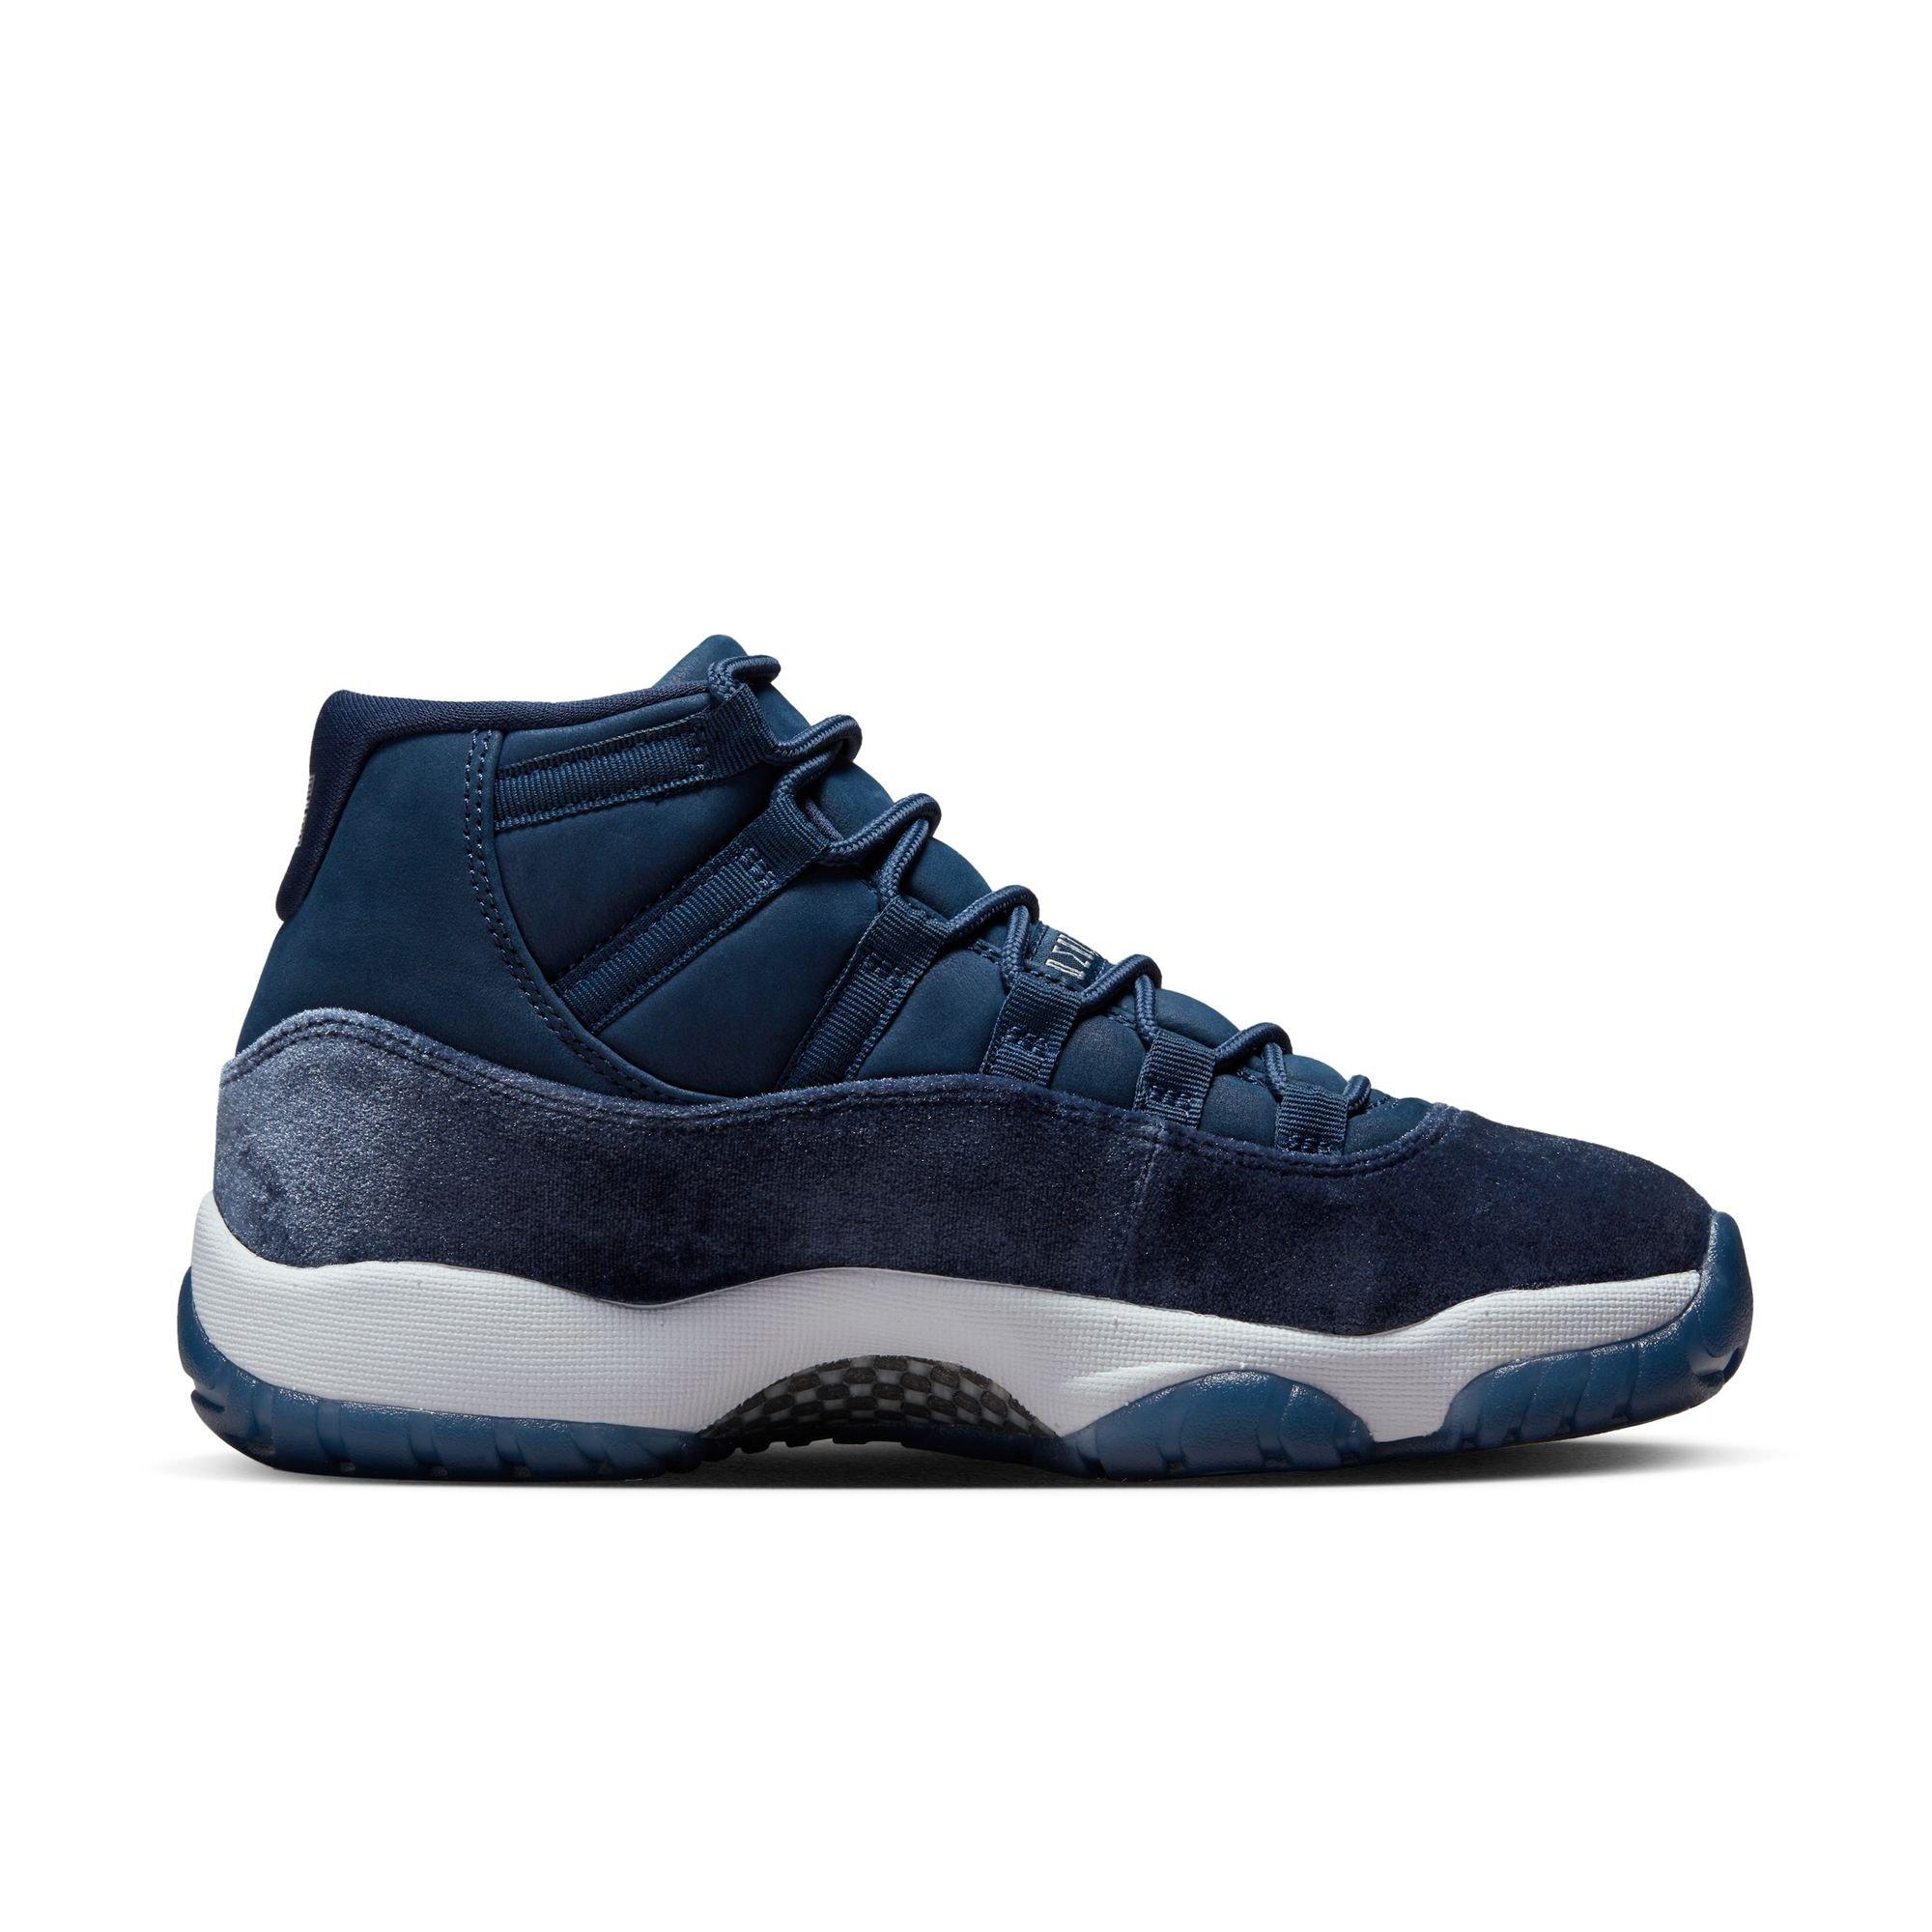 Sneakers Release- Jordan 11 Retro Low “Legend Blue” Launches 5/7